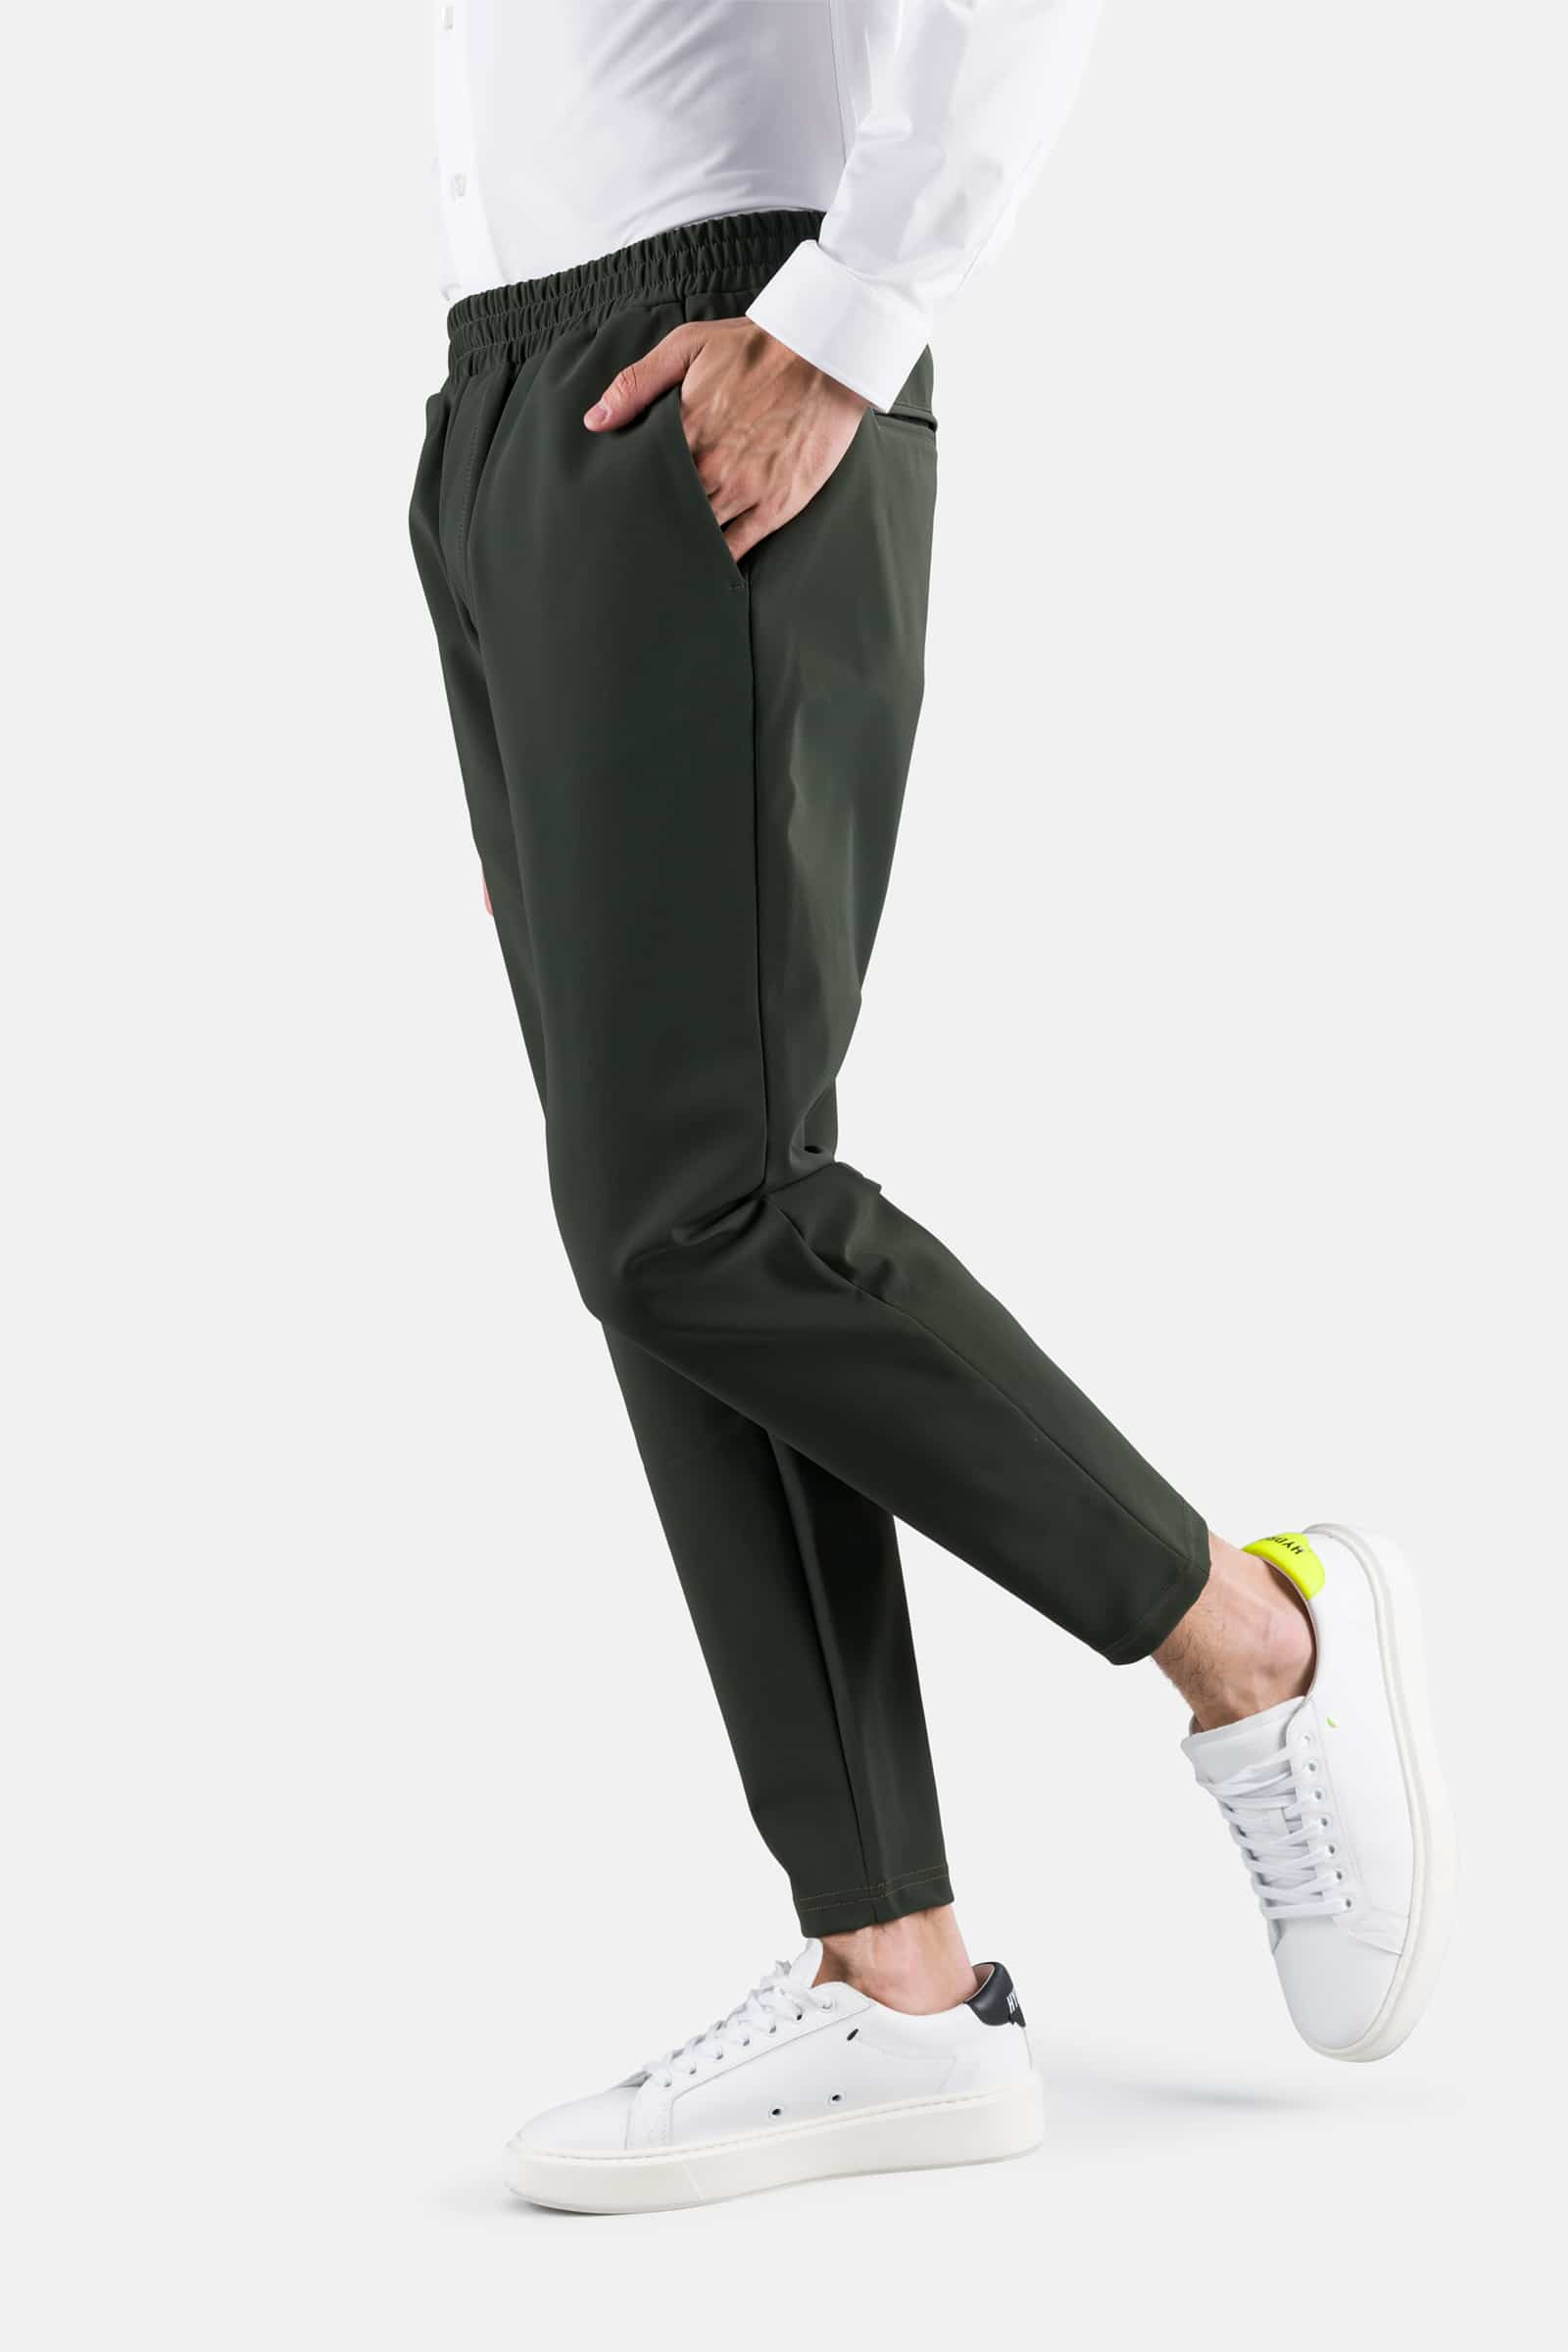 SPORT PANTS - MILITARY GREEN - Hydrogen - Luxury Sportwear